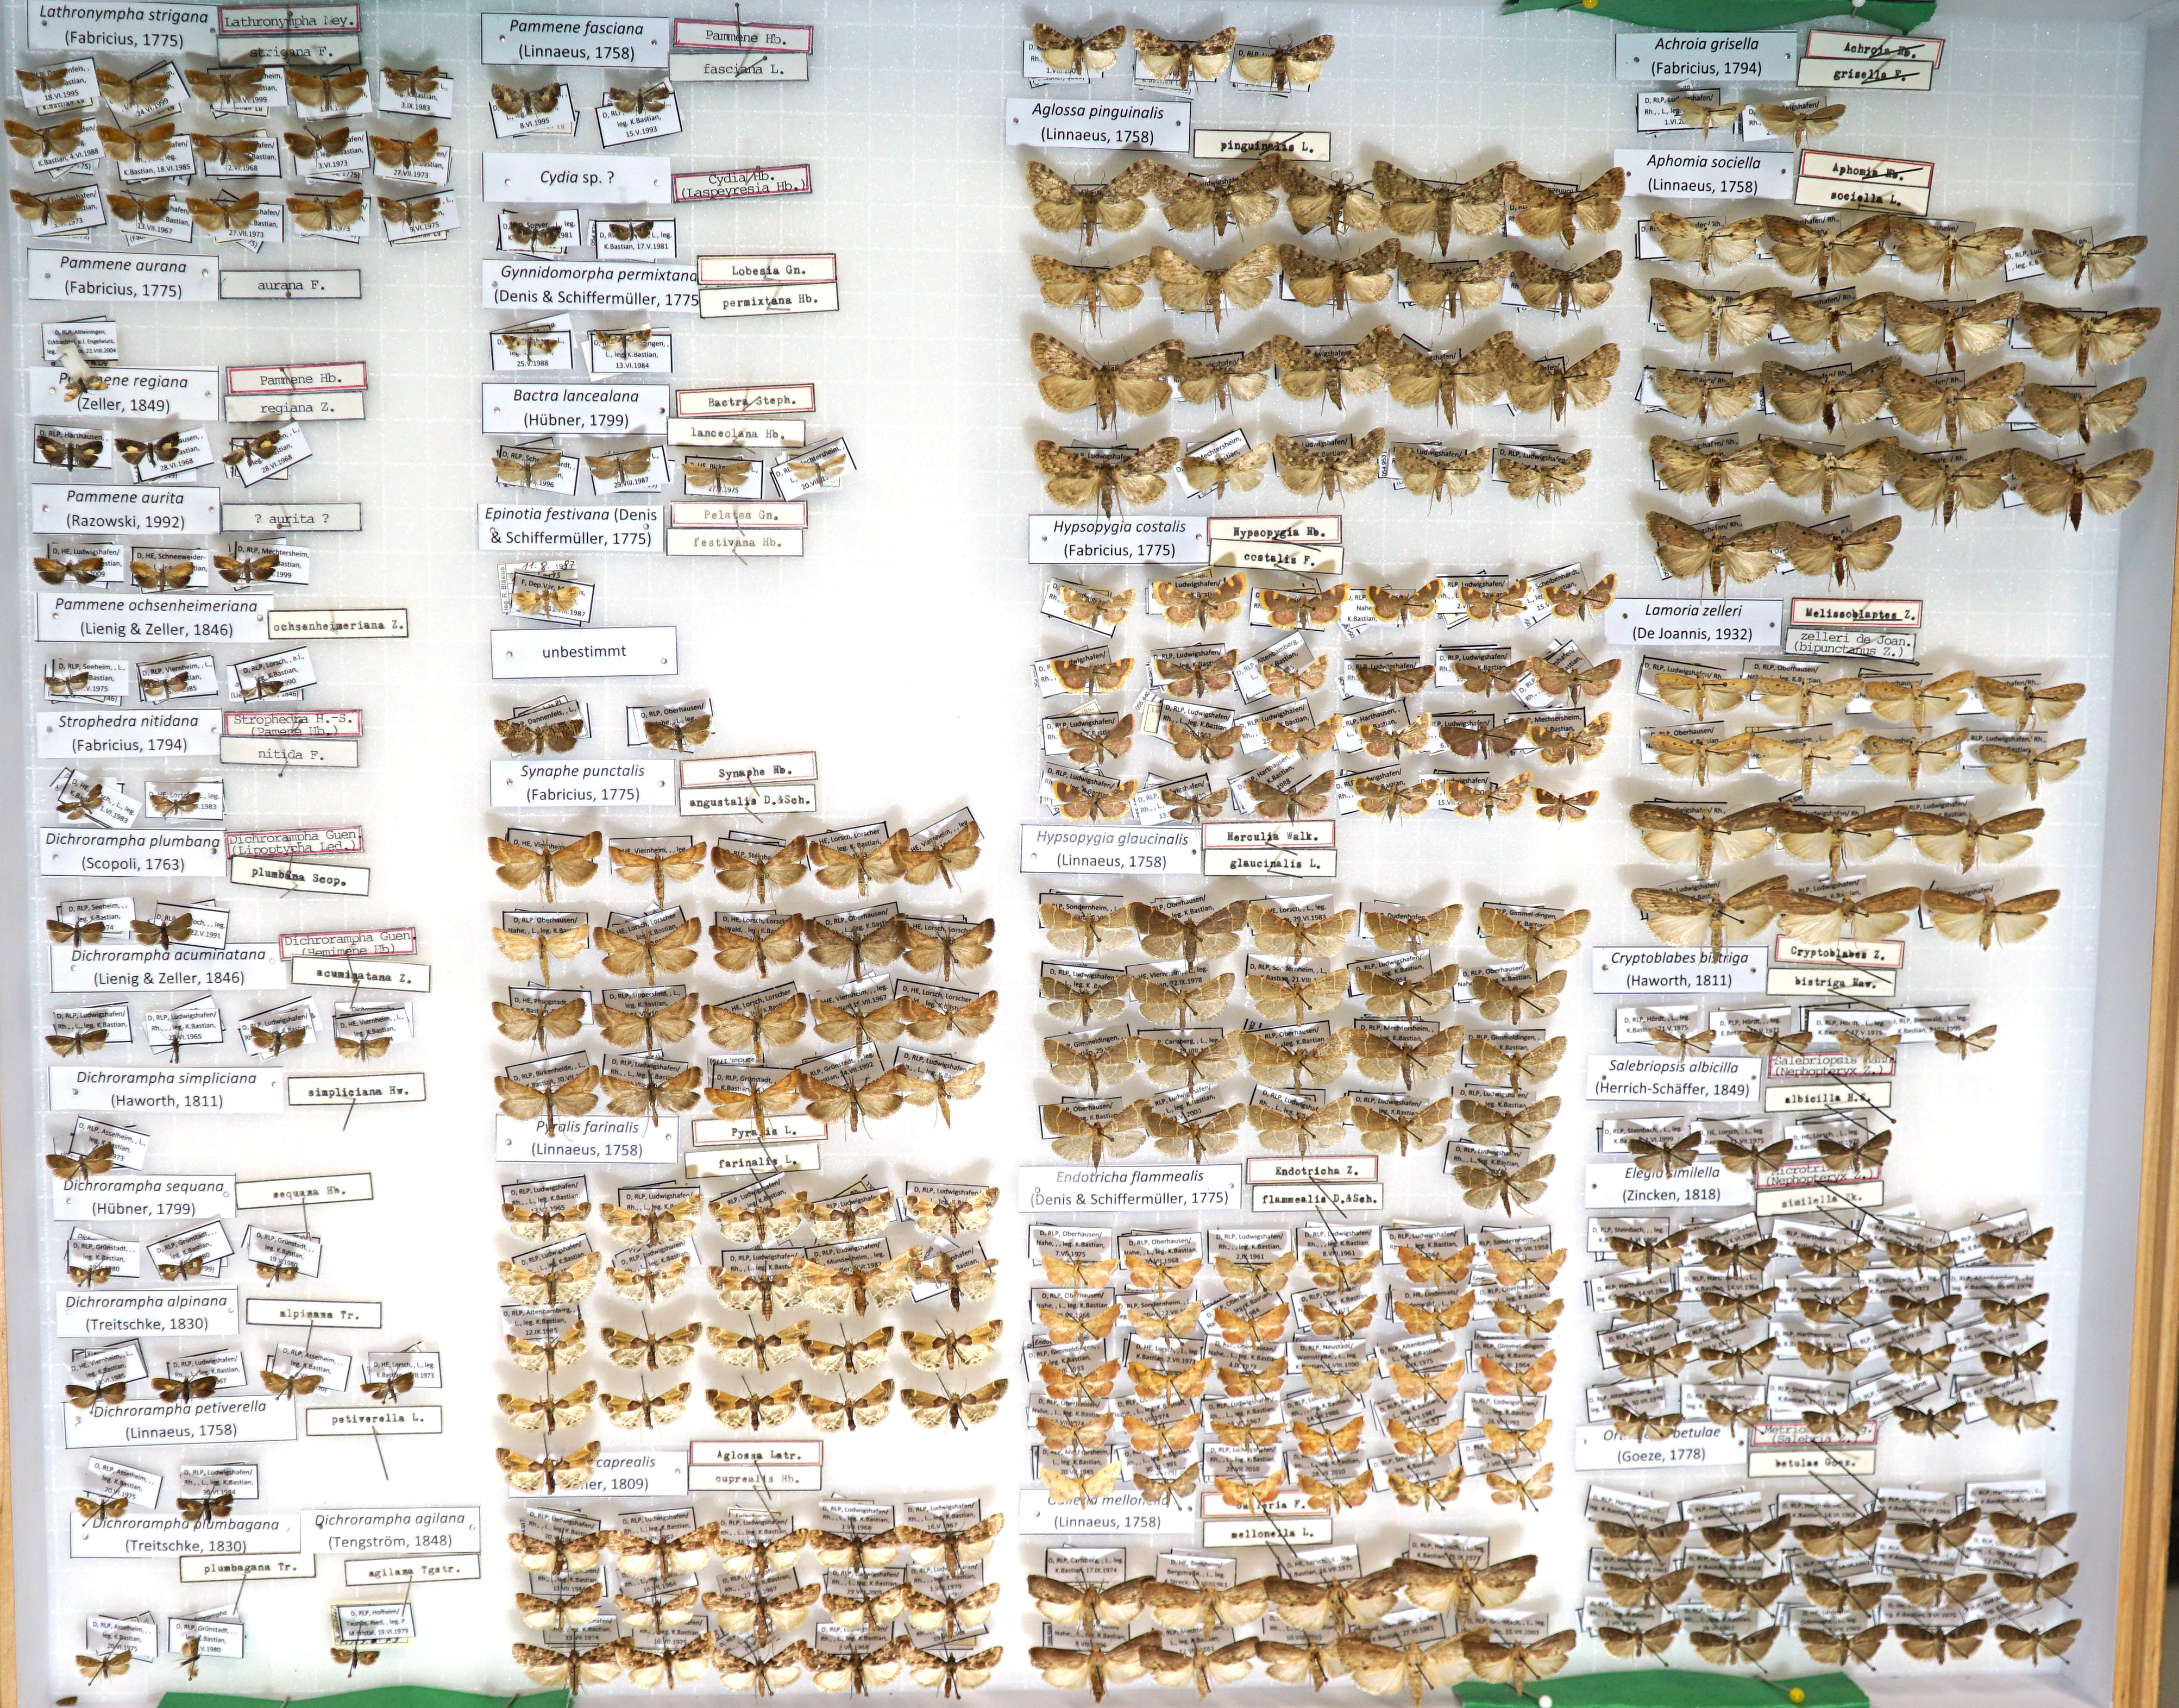 Sammlung Bastian - Tortricidae-Pyralidae (Pfalzmuseum für Naturkunde – POLLICHIA-Museum / Schneeberg CC BY)